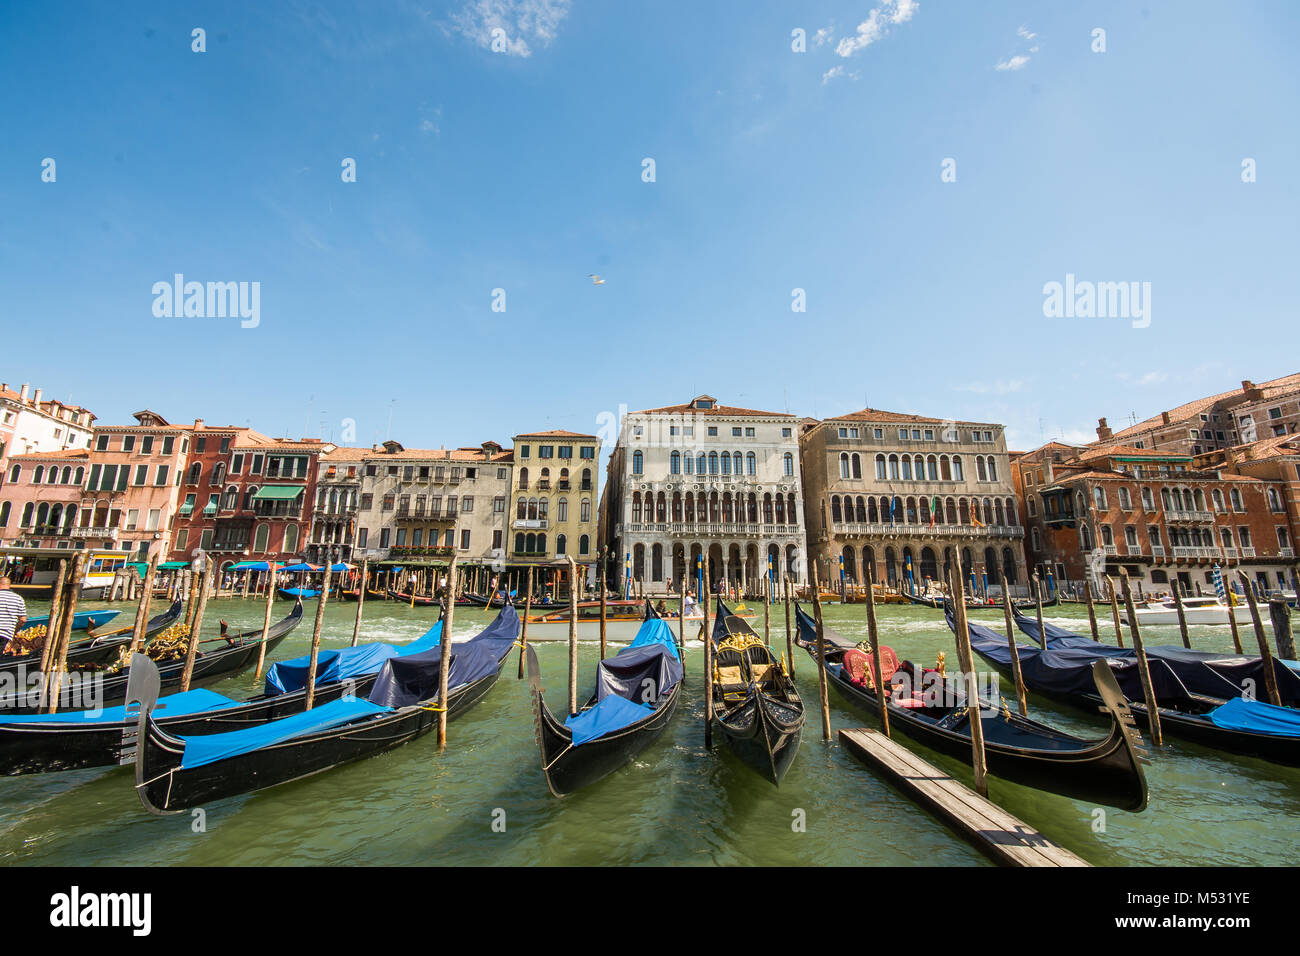 Der Canale Grande in der wunderschönen Stadt Venedig in Italien, venisia, Europa, Gondeln im Wasser sitzen bedeckt mit Plane Stockfoto